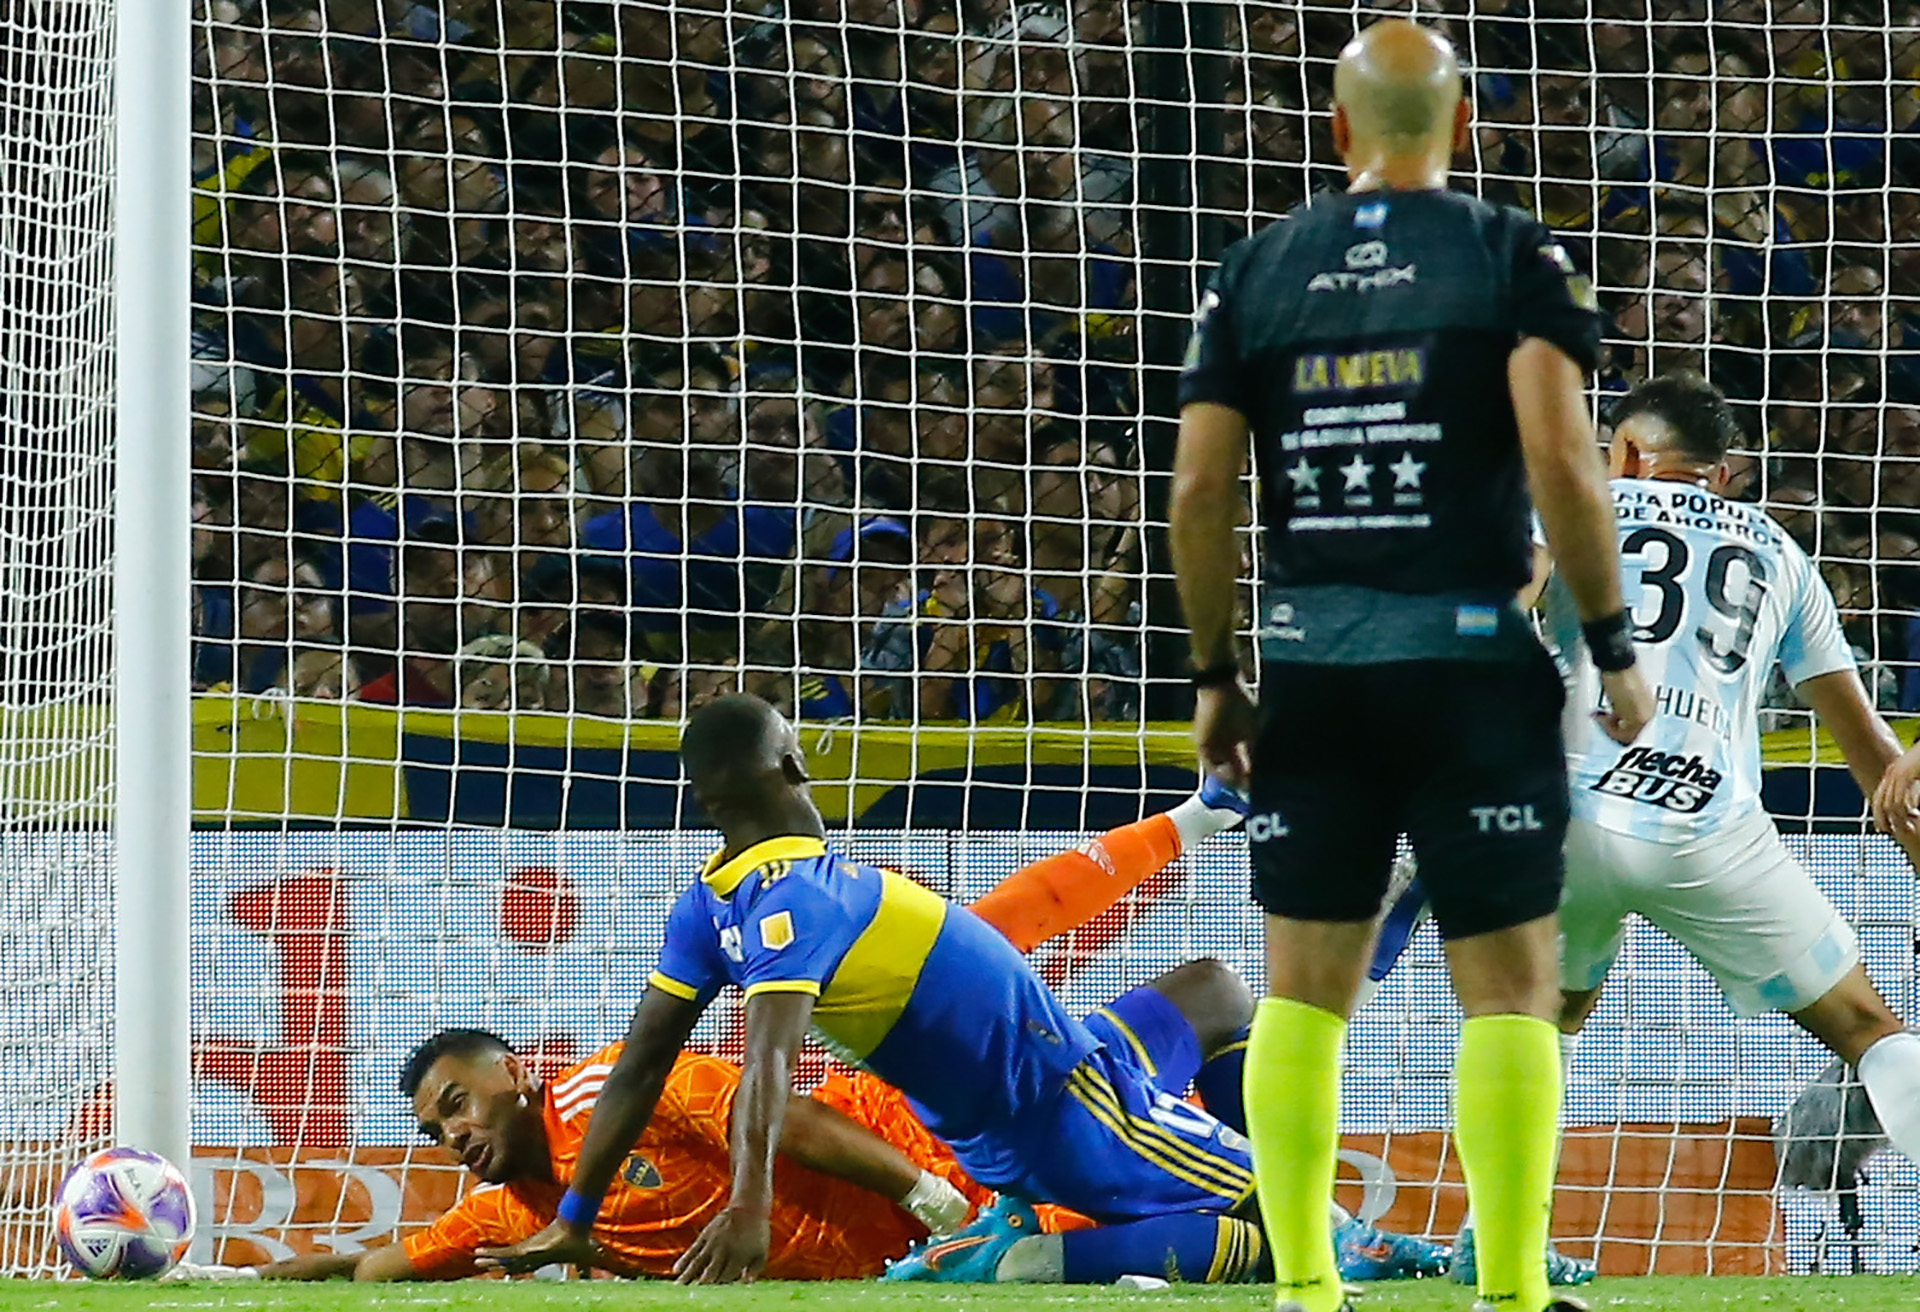 La atajada clave que le valió a Chiquito Romero la primera ovación con el buzo de Boca Juniors: la reacción de su esposa Eliana Guercio